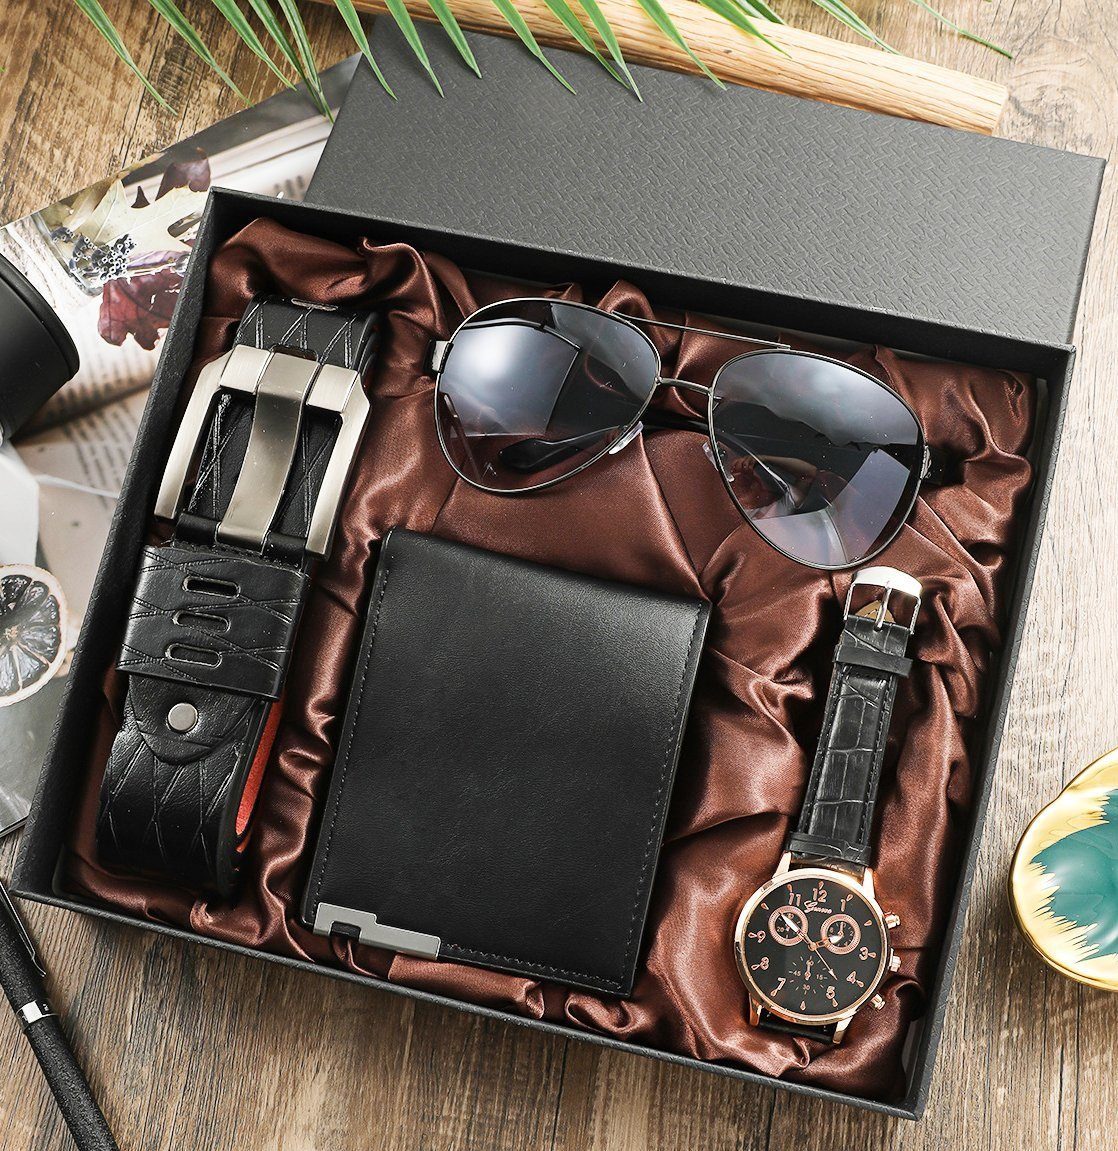 KUGI Geldbörse 4PCS Geschenk für Männer Herrenuhr Sonnenbrillen Gürtel Set, Herren Geschenkbox Sets,mit Ledergürtel Wallet Watch Gläsern